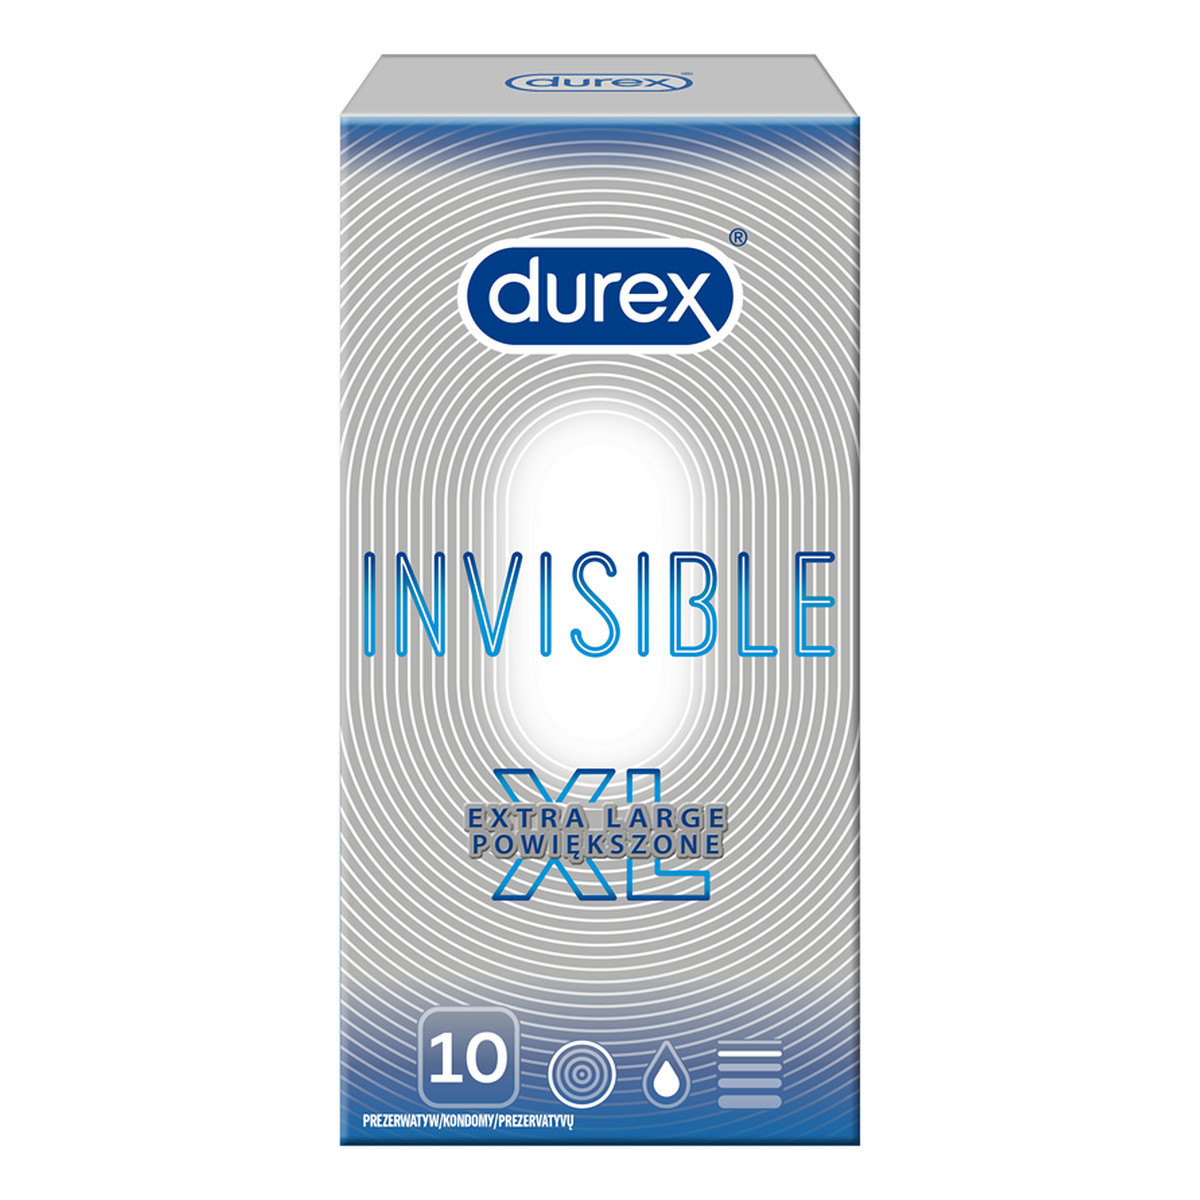 Durex Invisible extra large prezerwatywy powiększone 10szt